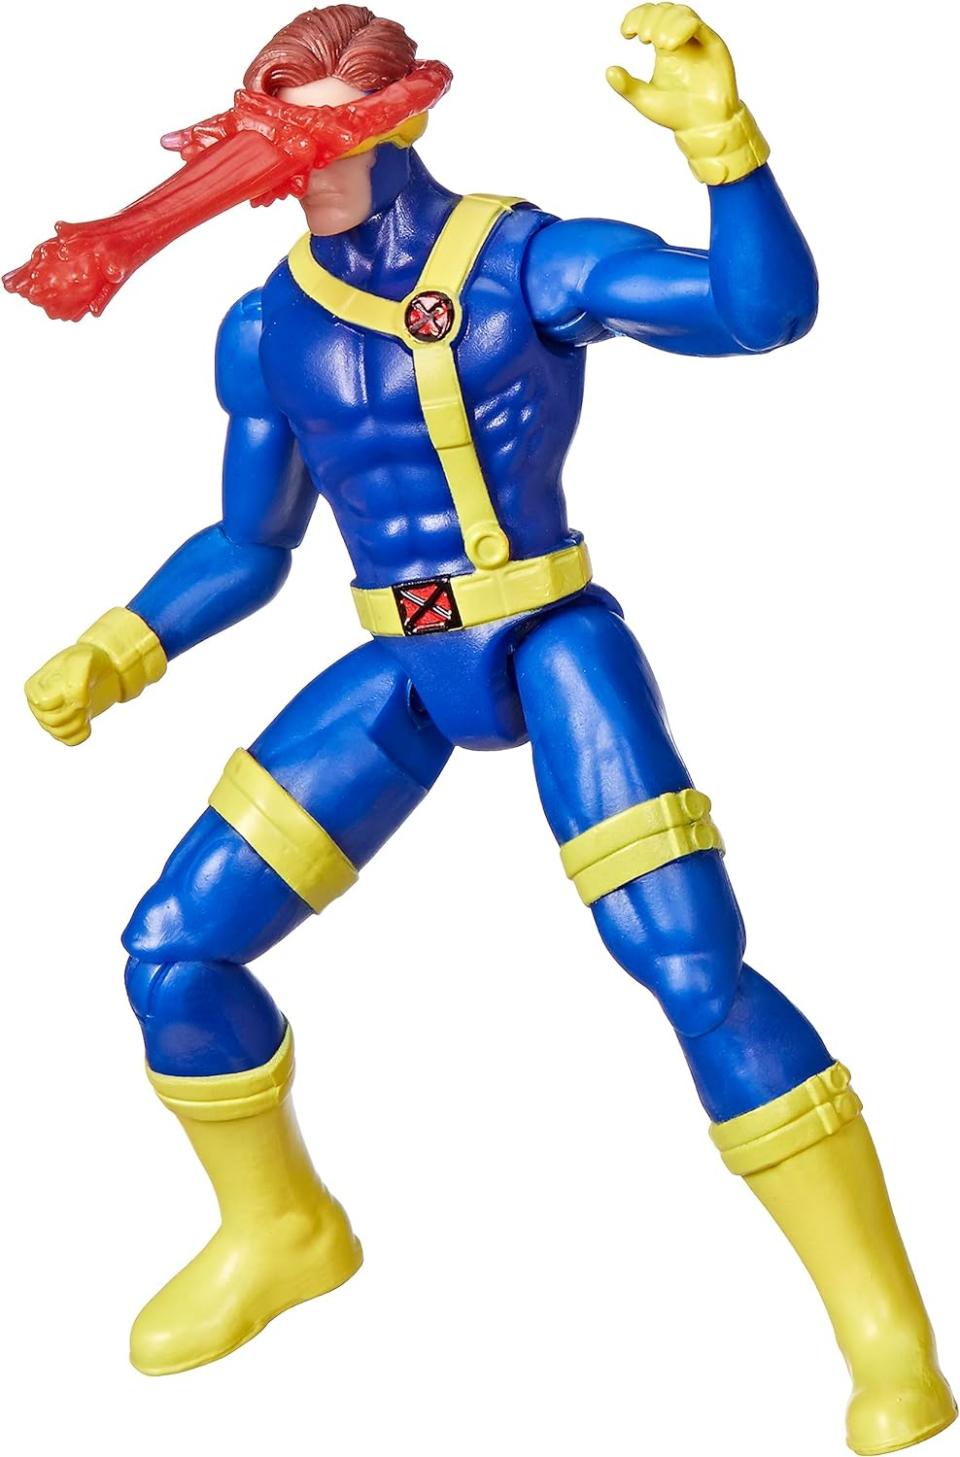 Cyclops' X-Men '97 action figure. (Image: Amazon)